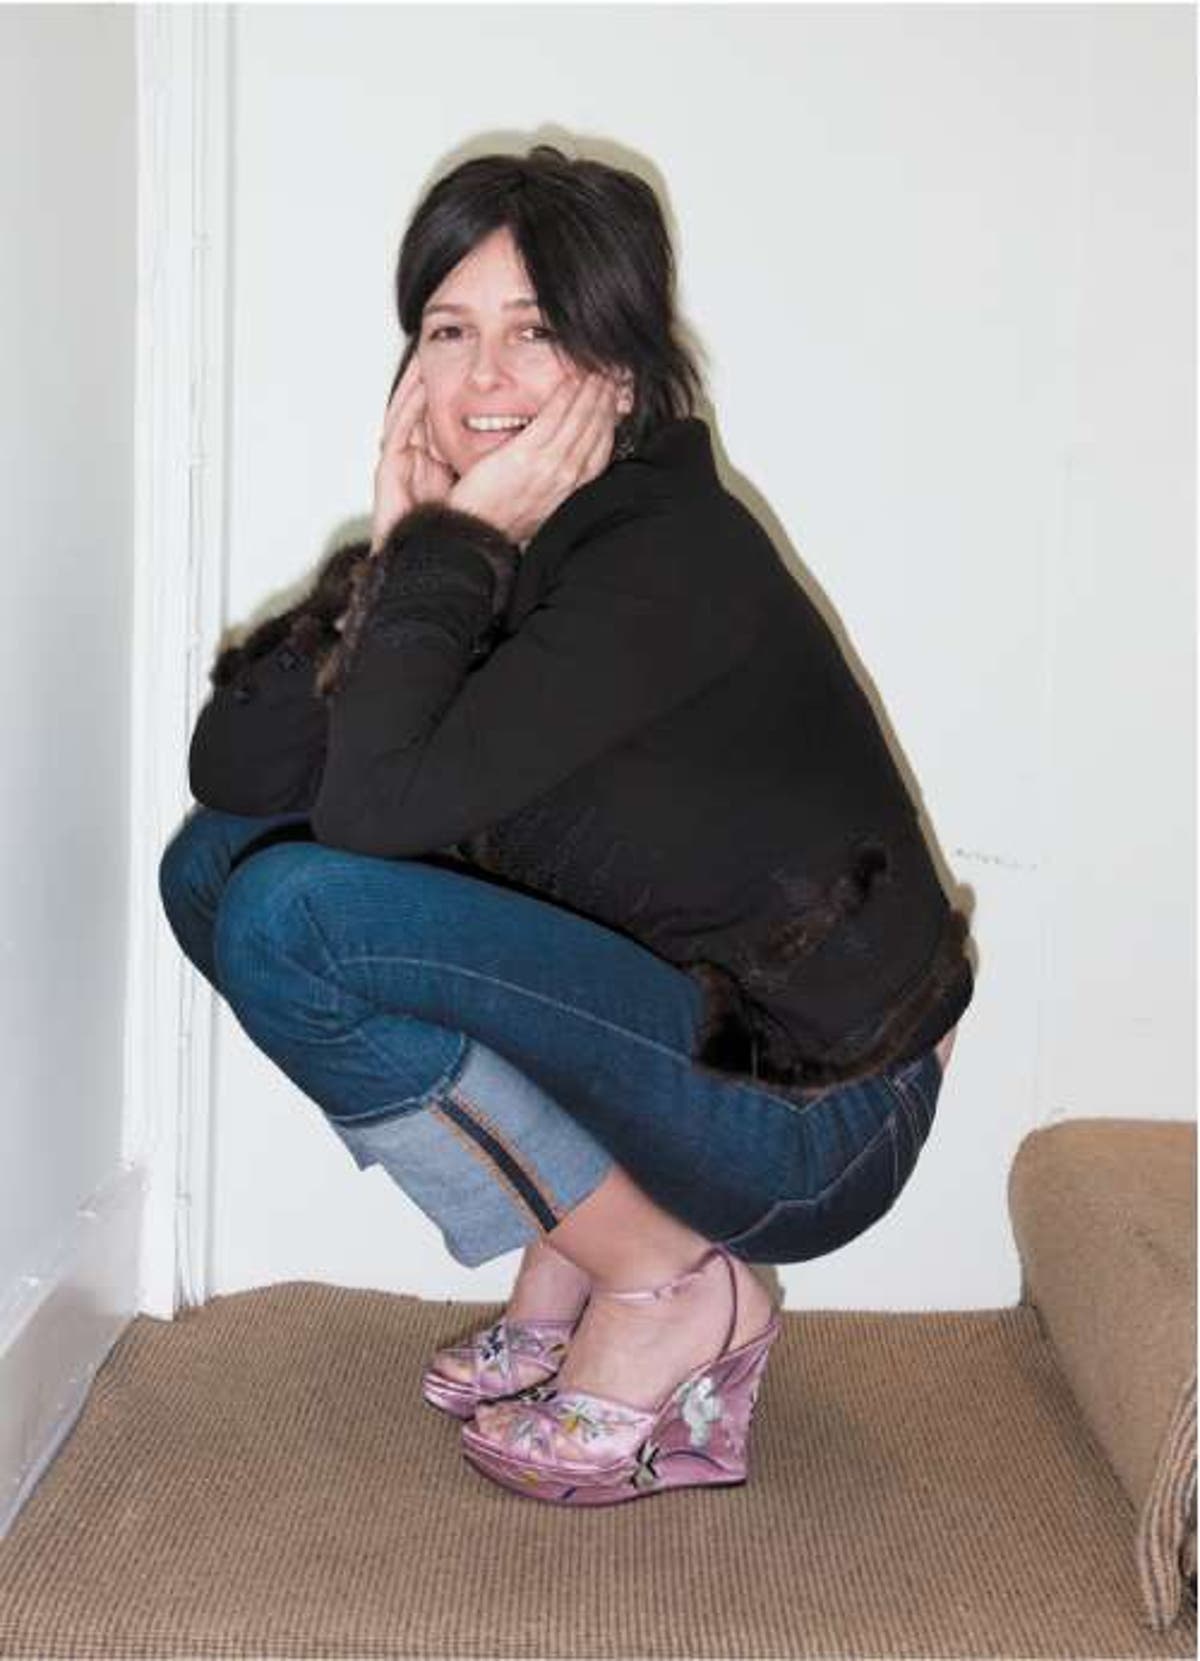 My Secret Emma Hope, shoe designer, 41 | The Independent | Independent